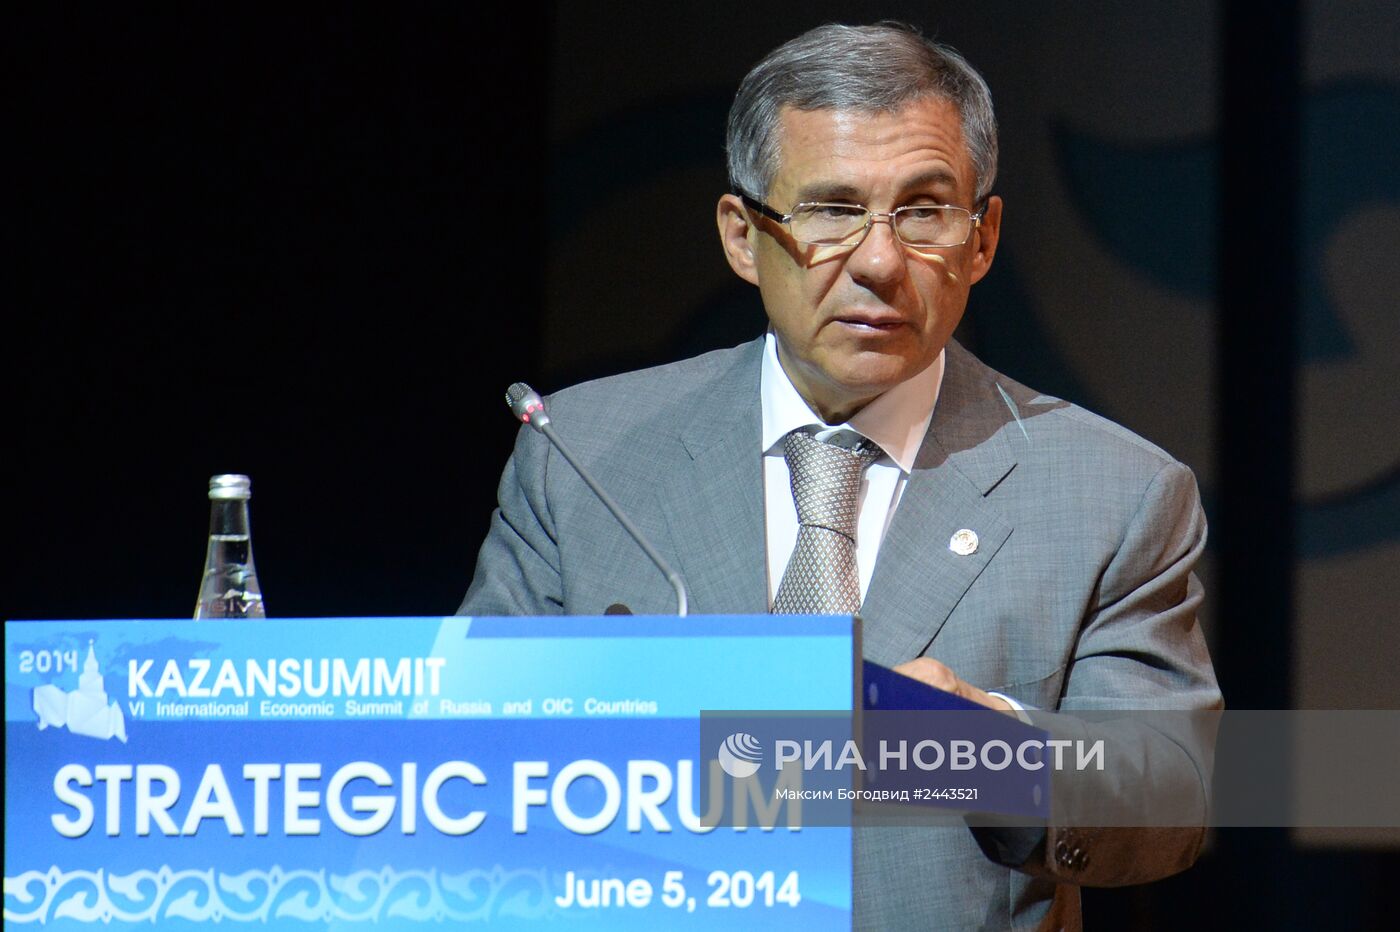 VI Международный экономический саммит России и стран ОИС